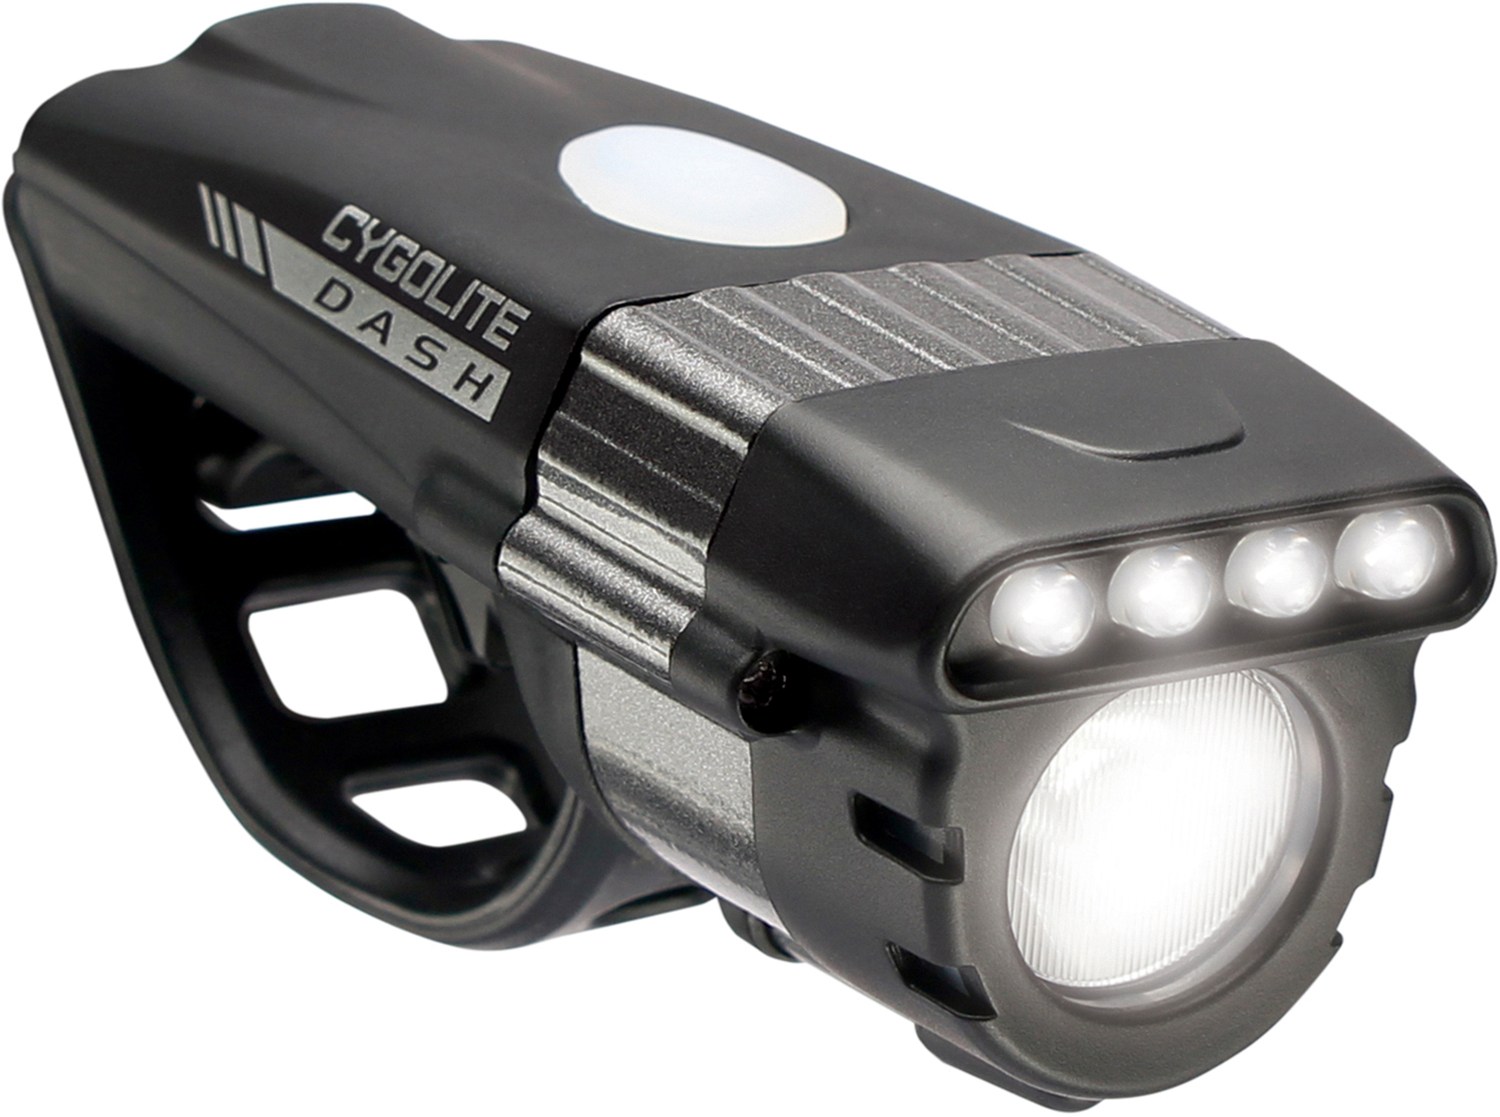 Передний велосипедный фонарь Dash Pro 600 Cygolite, черный передний свет